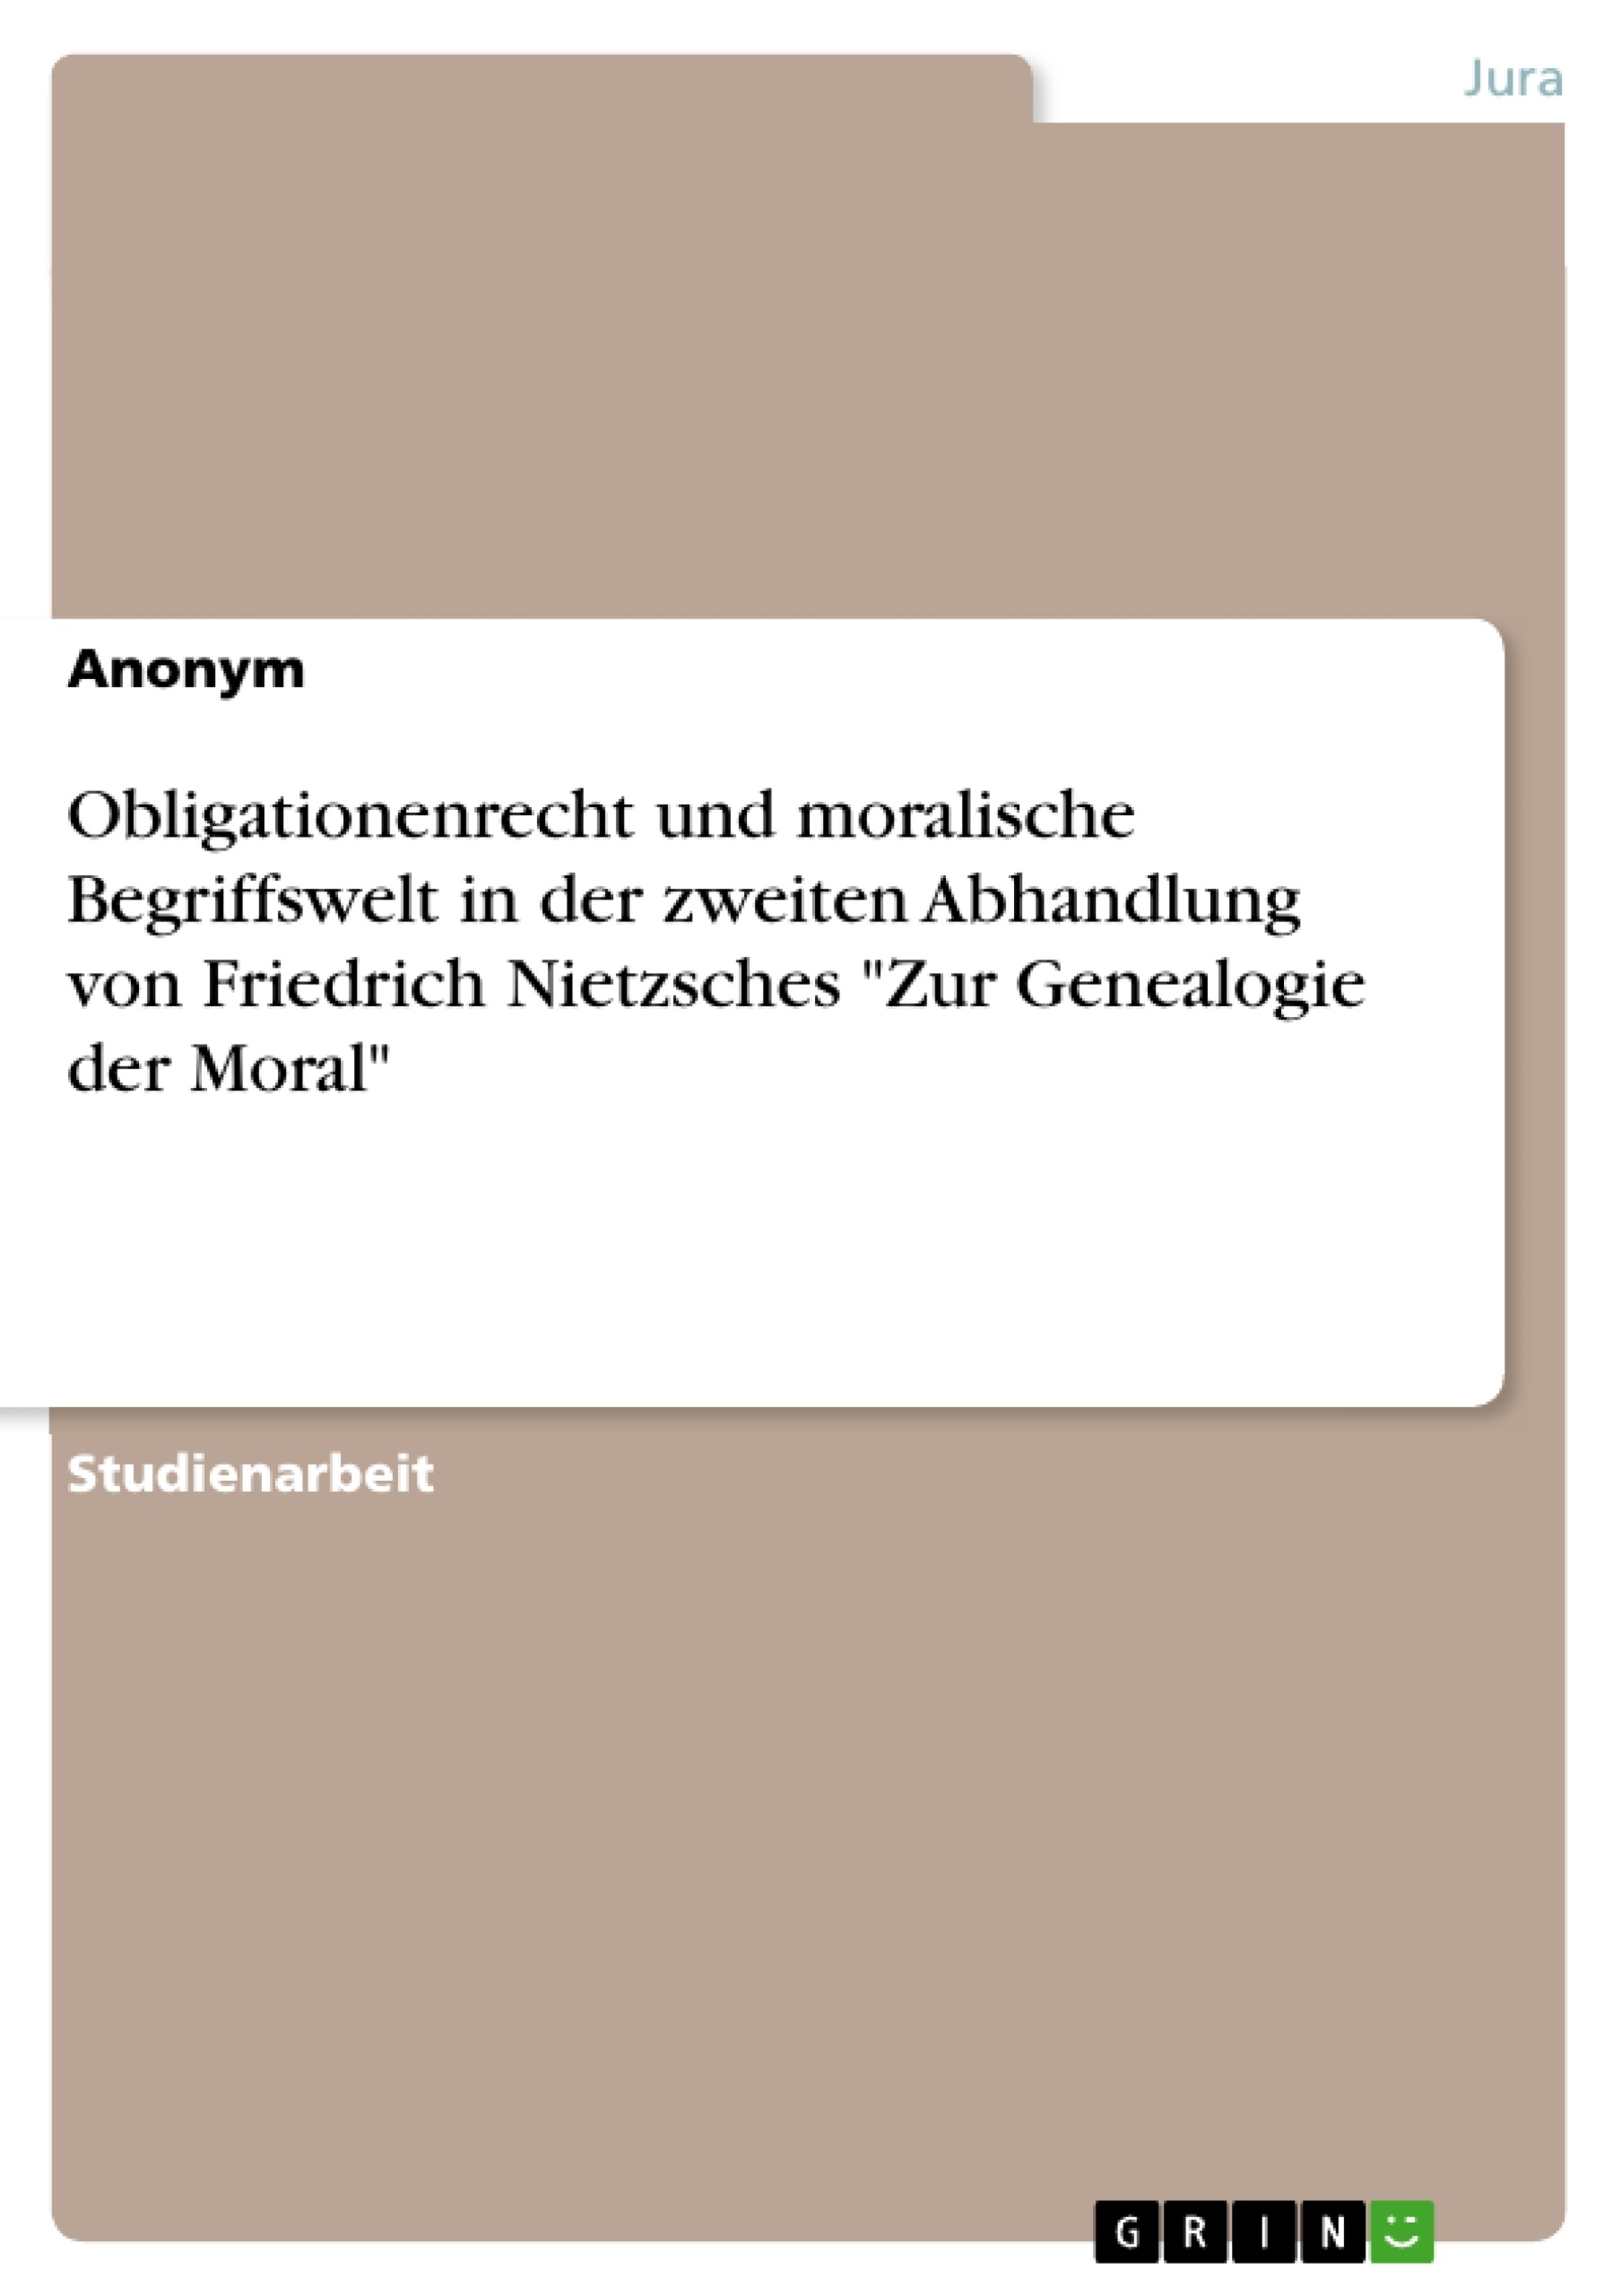 Titre: Obligationenrecht und moralische Begriffswelt in der zweiten Abhandlung von Friedrich Nietzsches "Zur Genealogie der Moral"